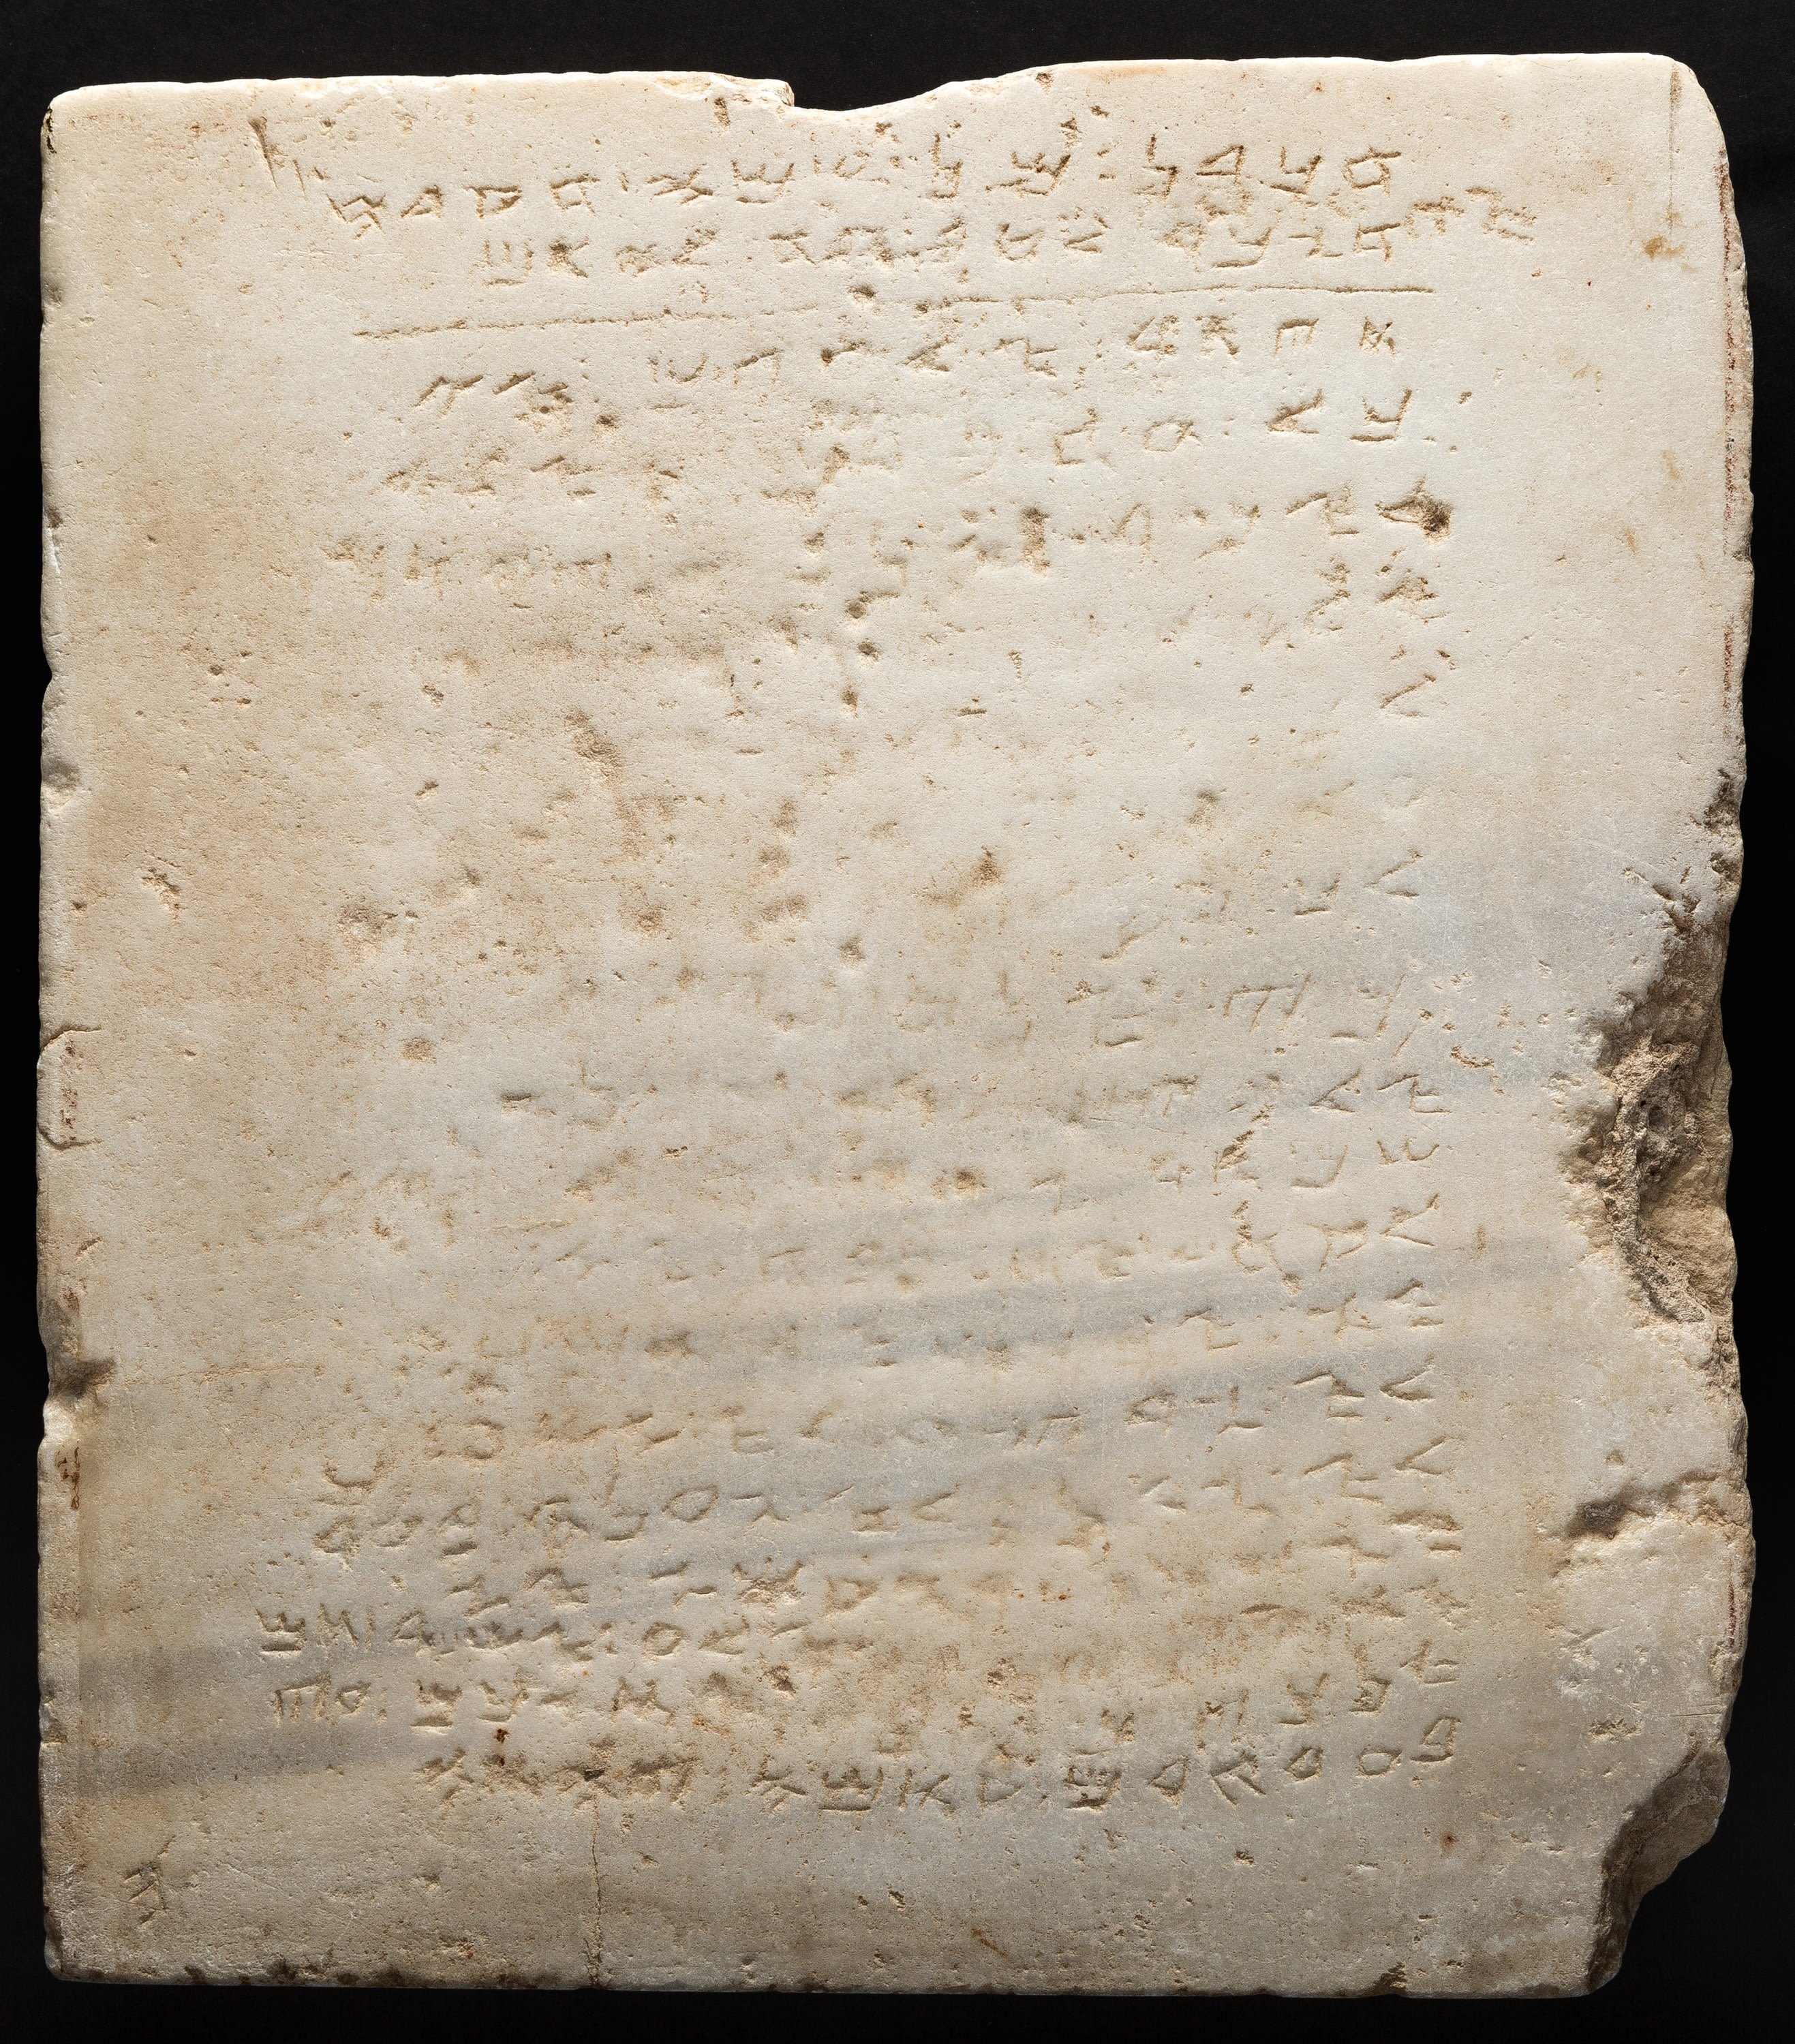 10 commandments tablets